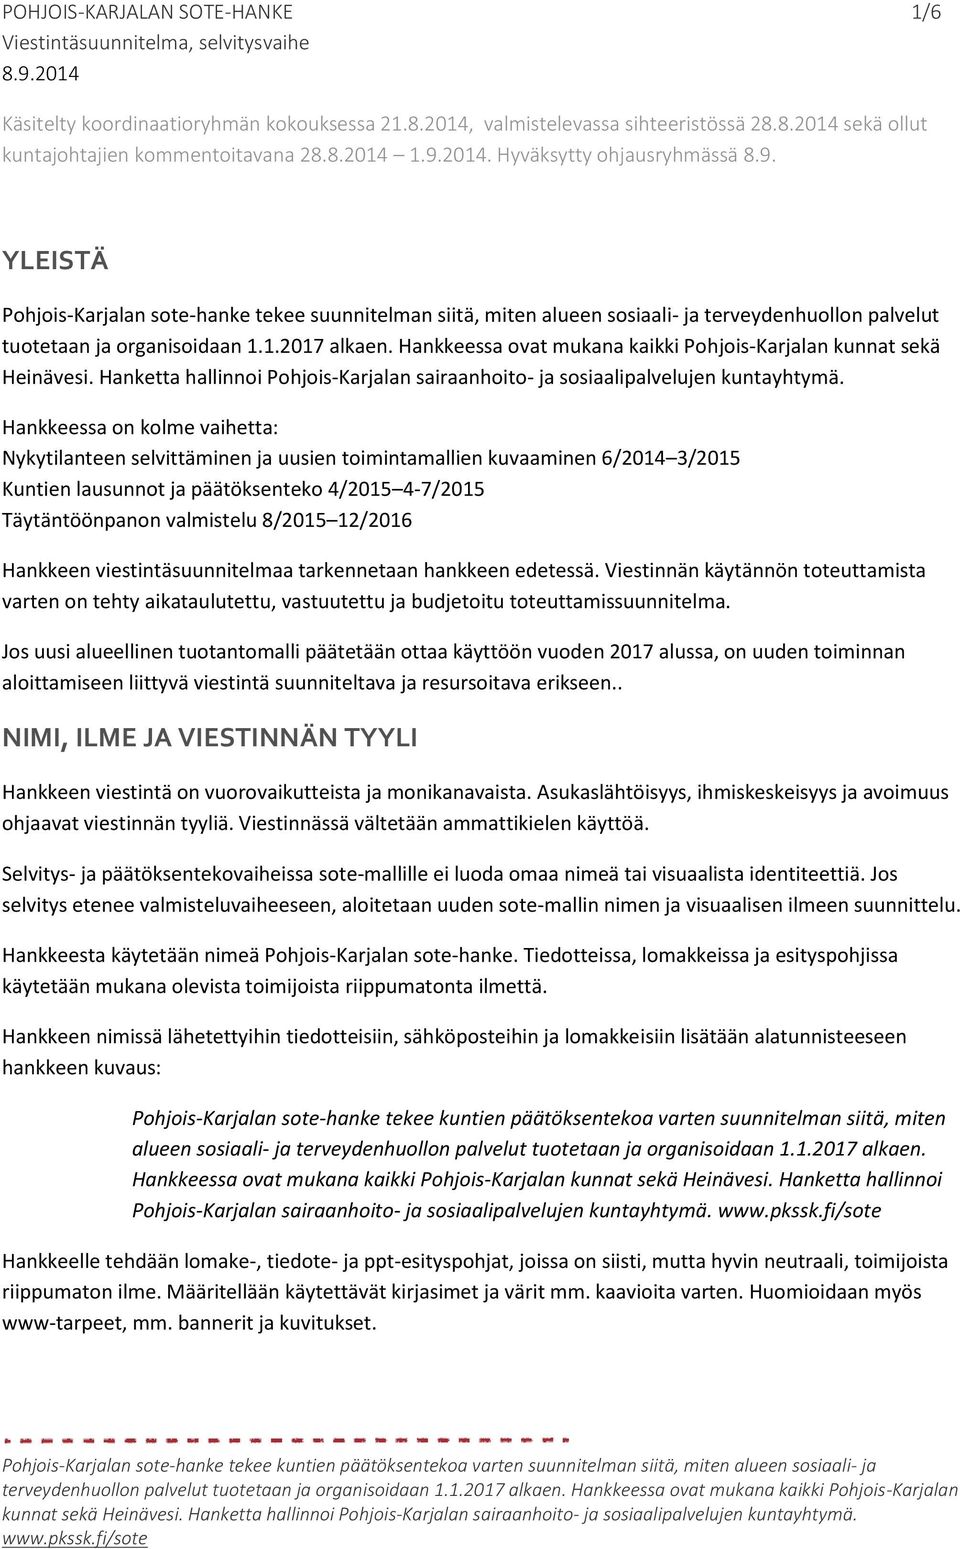 Hankkeessa ovat mukana kaikki Pohjois-Karjalan kunnat sekä Heinävesi. Hanketta hallinnoi Pohjois-Karjalan sairaanhoito- ja sosiaalipalvelujen kuntayhtymä.